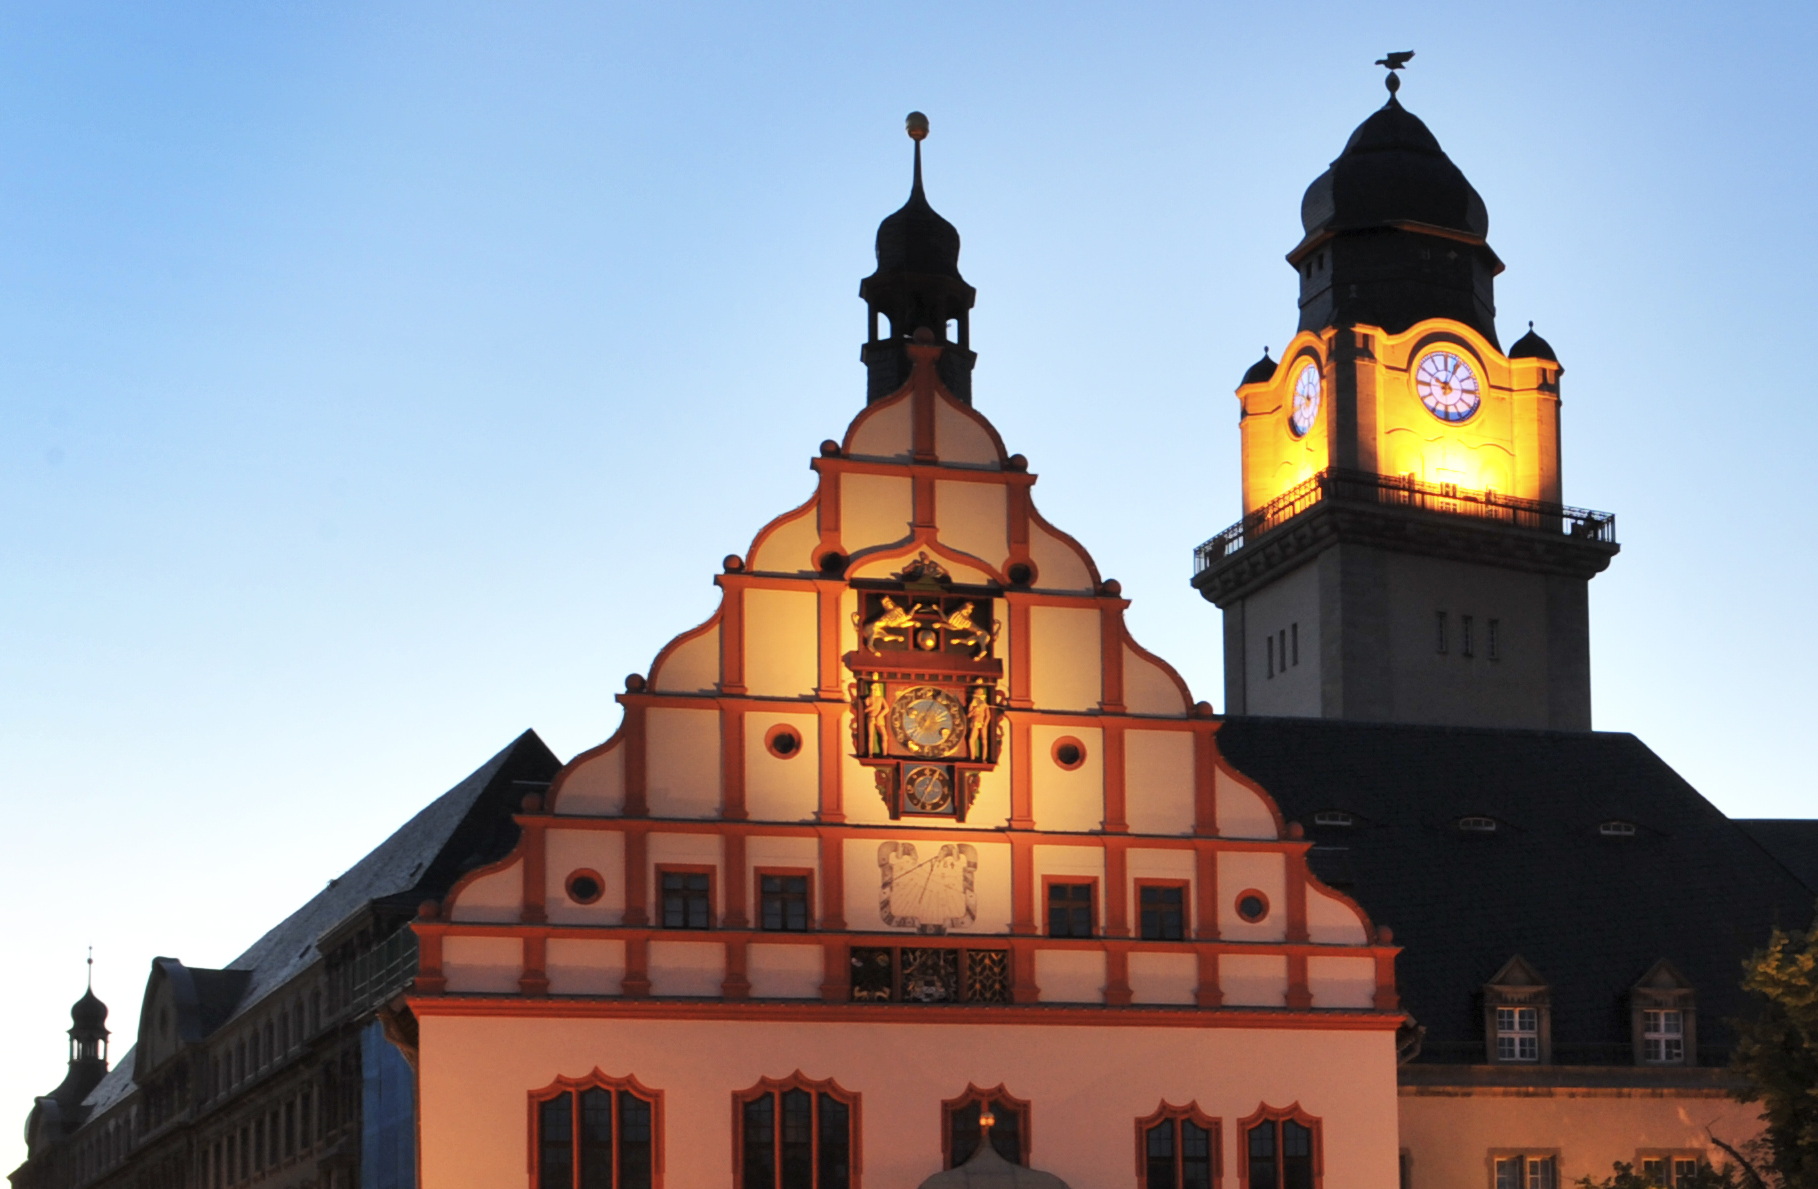 Bild vergrößern: Rathausturm und Altes Rathaus mit Beleuchtung